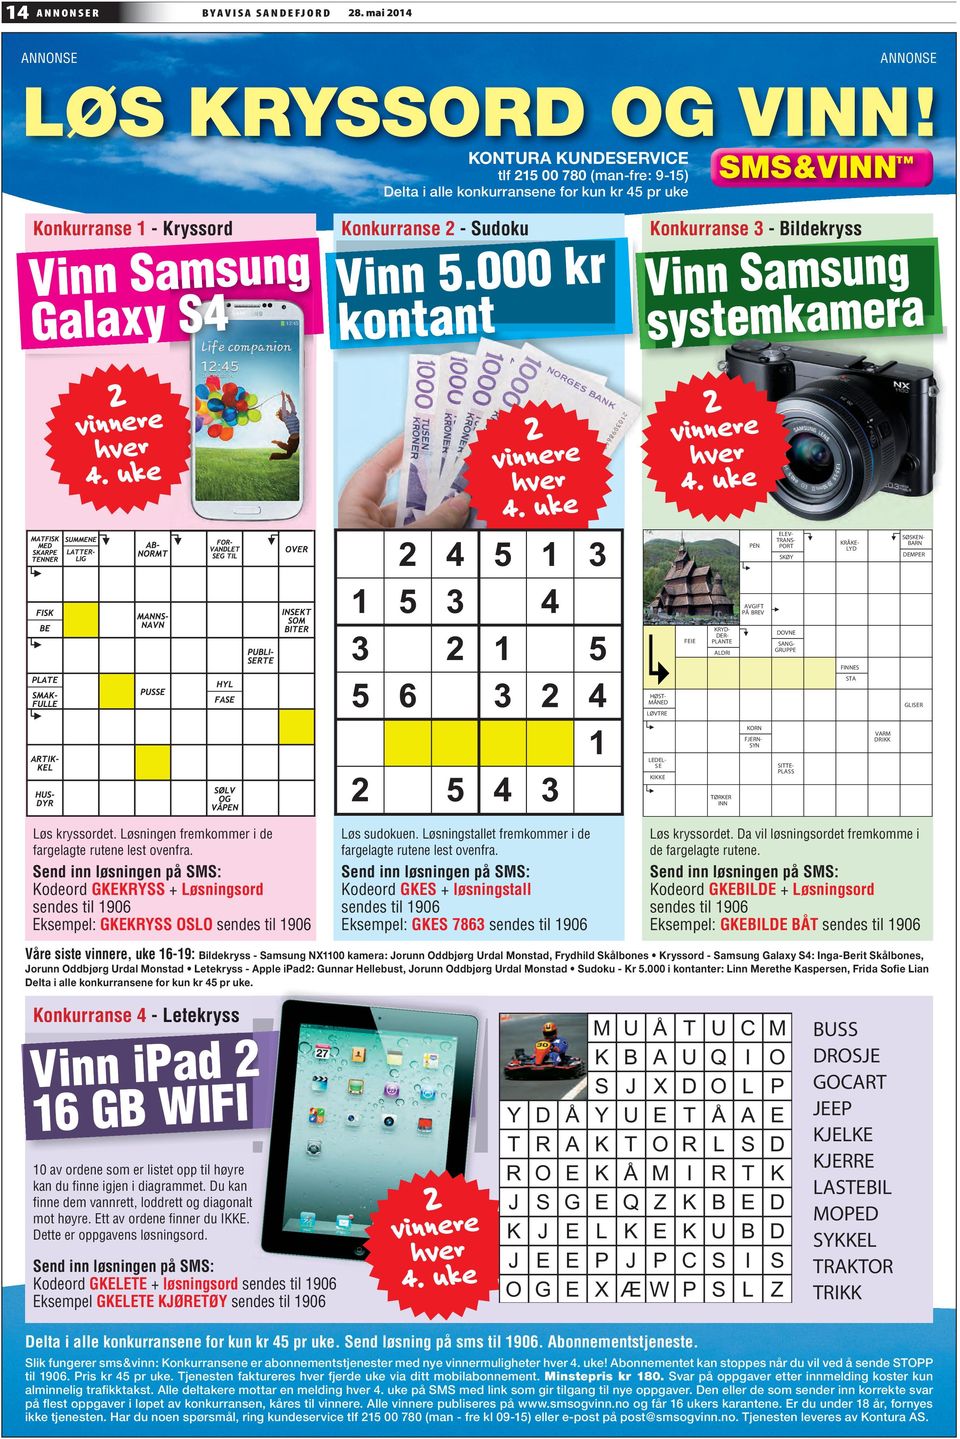 000 kr kontant Konkurranse 3 - Bildekryss Vinn Samsung systemkamera 2 vinnere hver 4. uke 2 vinnere hver 4.